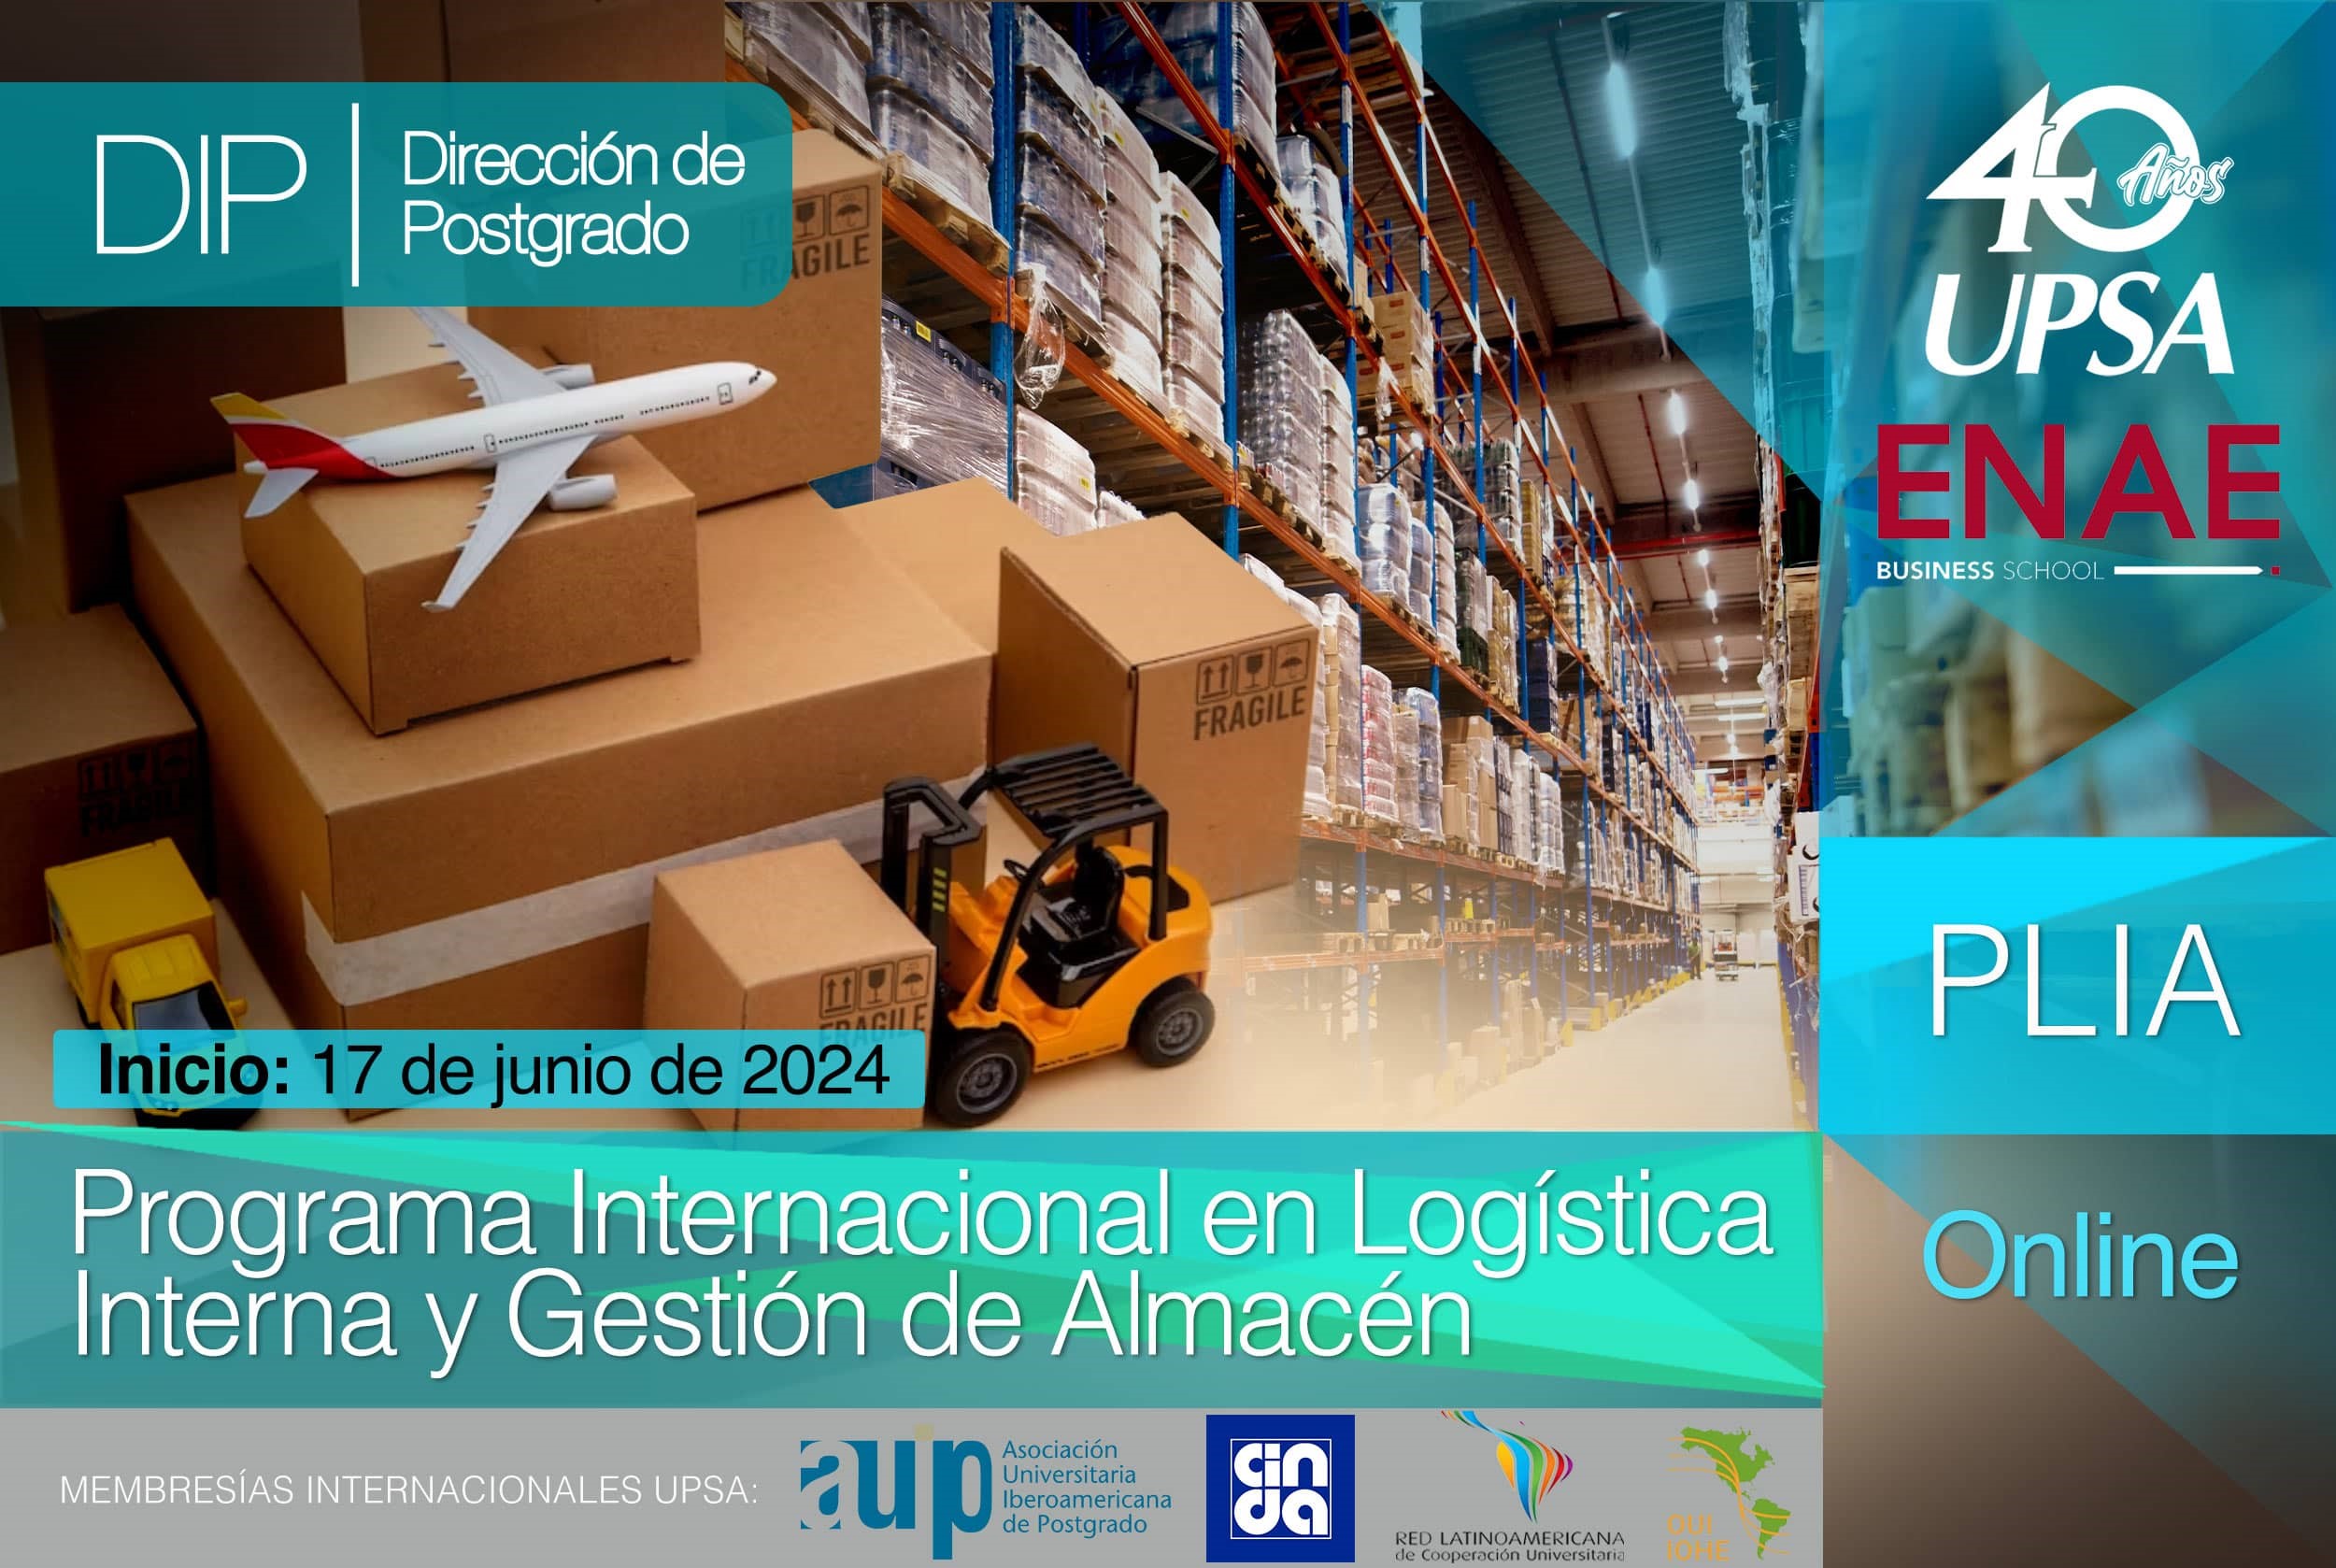 Programa Internacional en Logística Interna y Gestión de Almacén (ENAE Business School/UPSA)